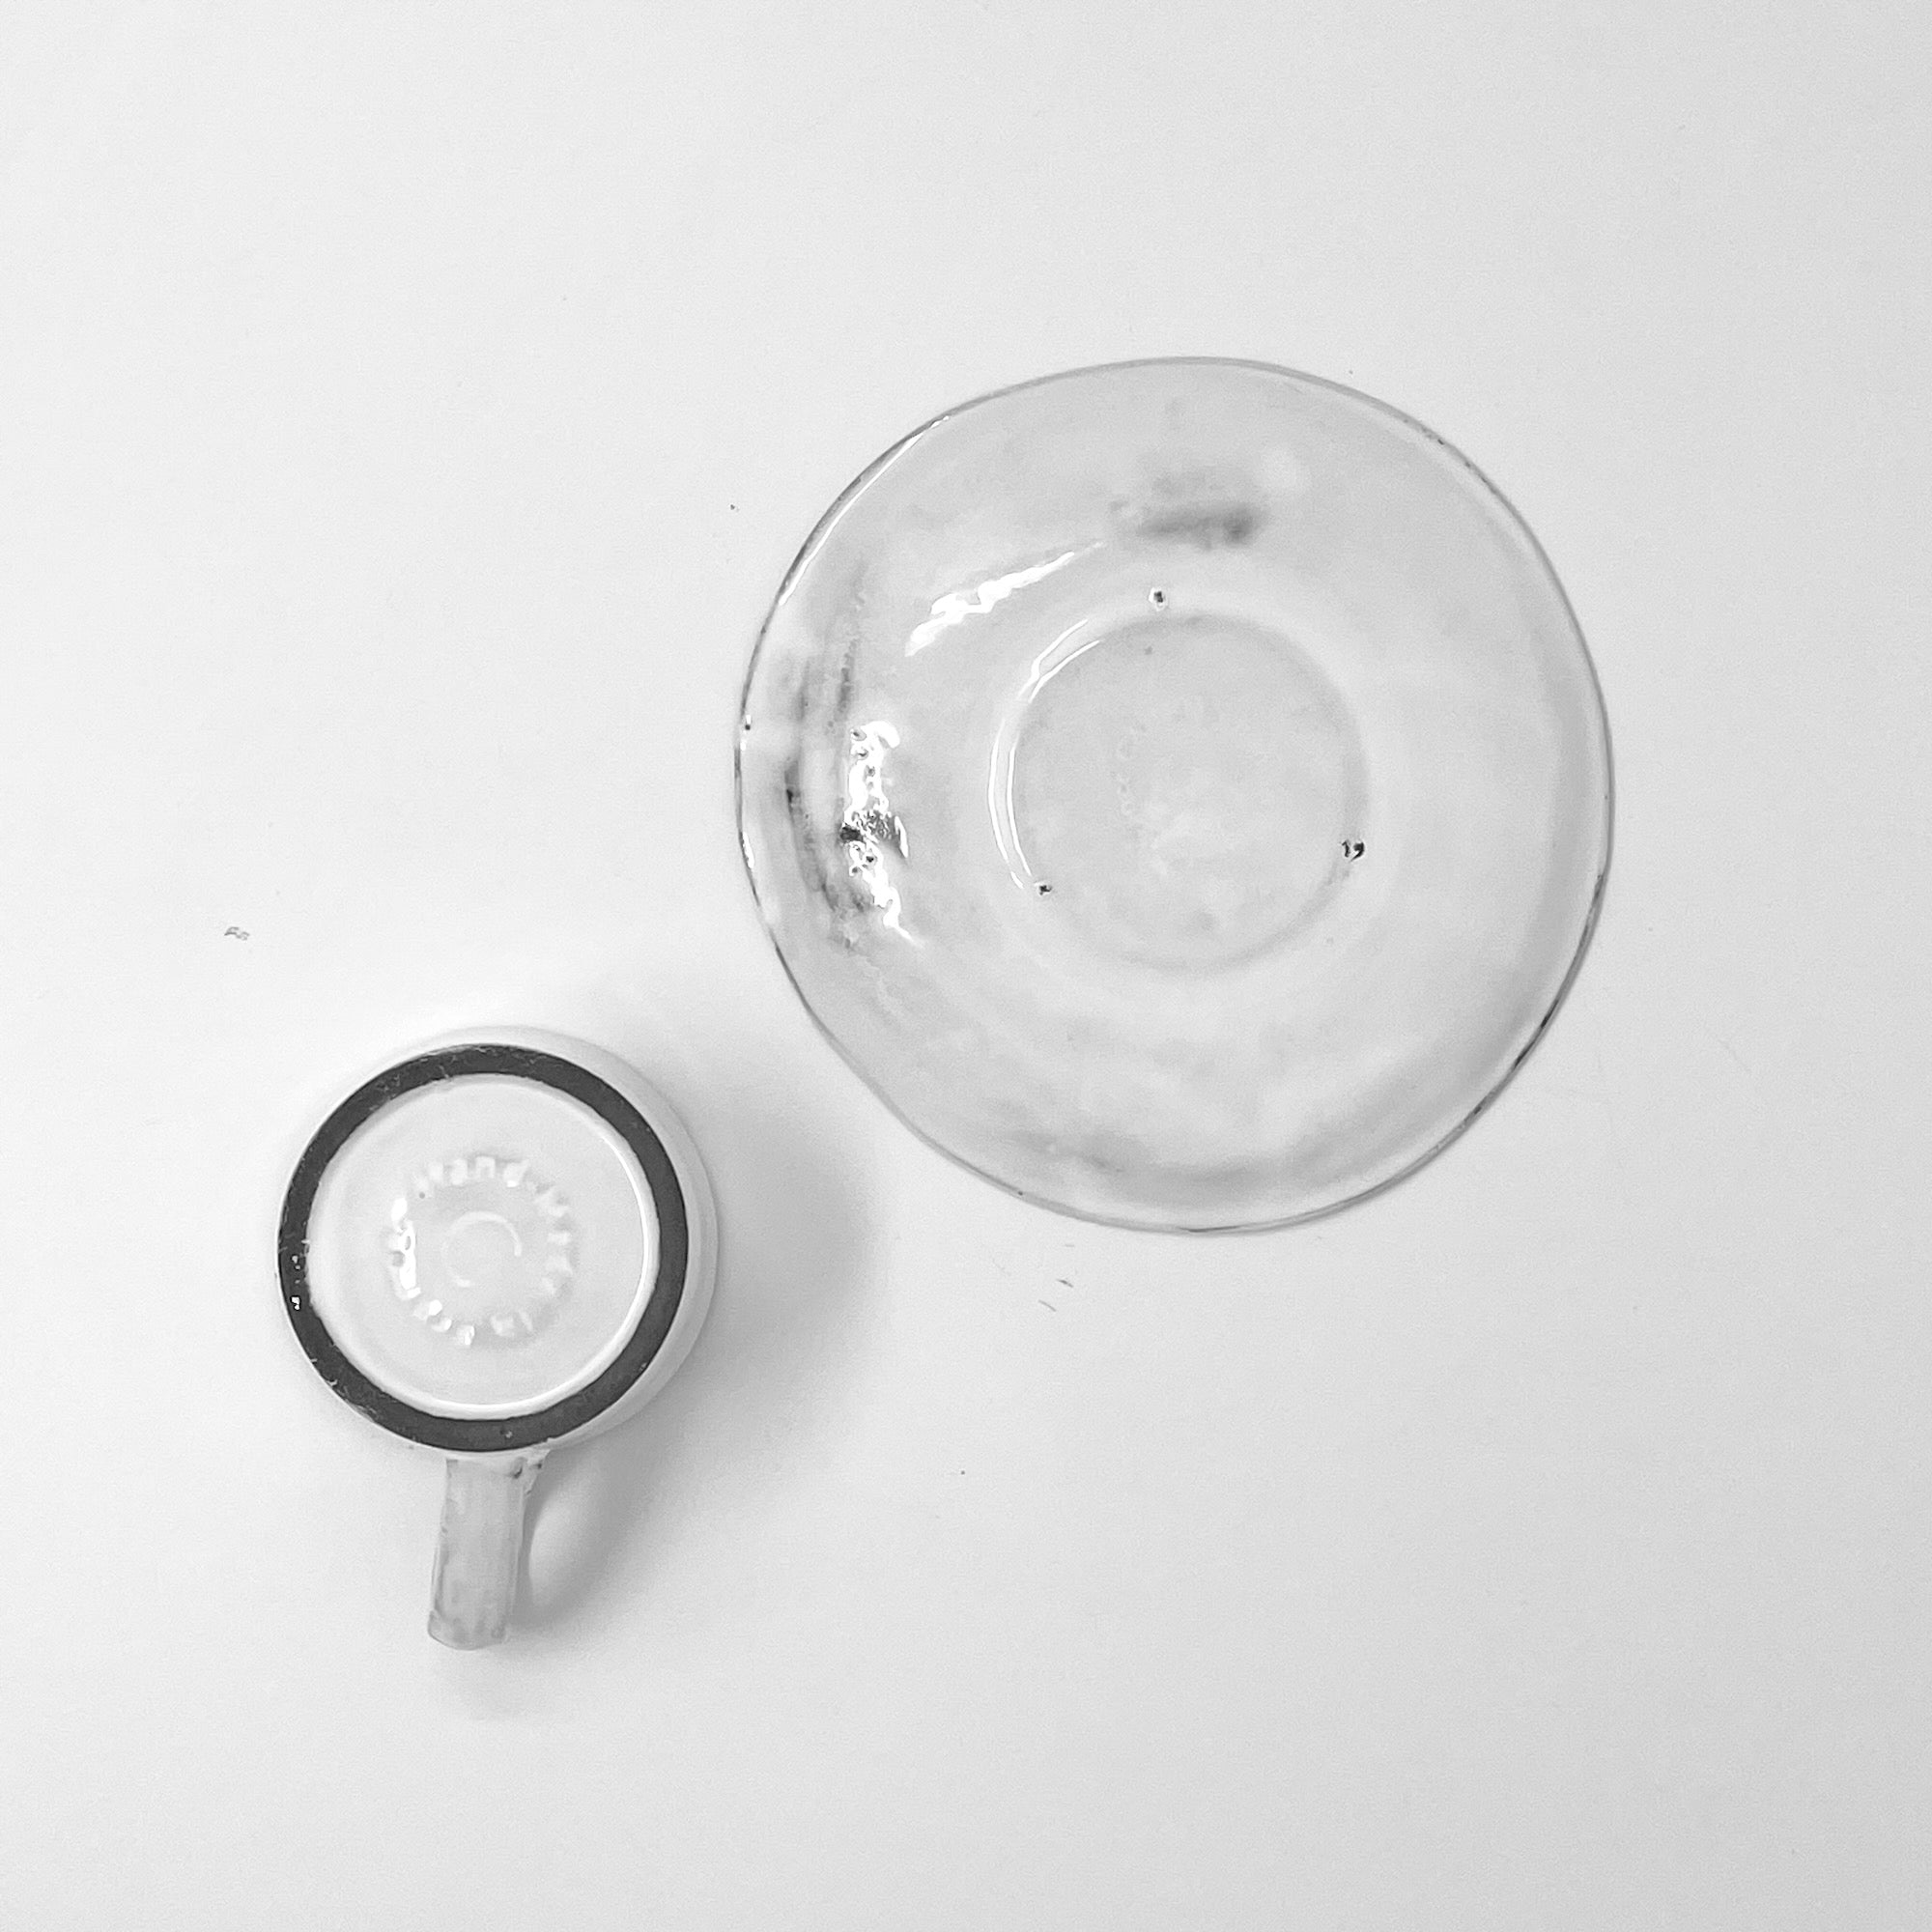 Small mug and saucer